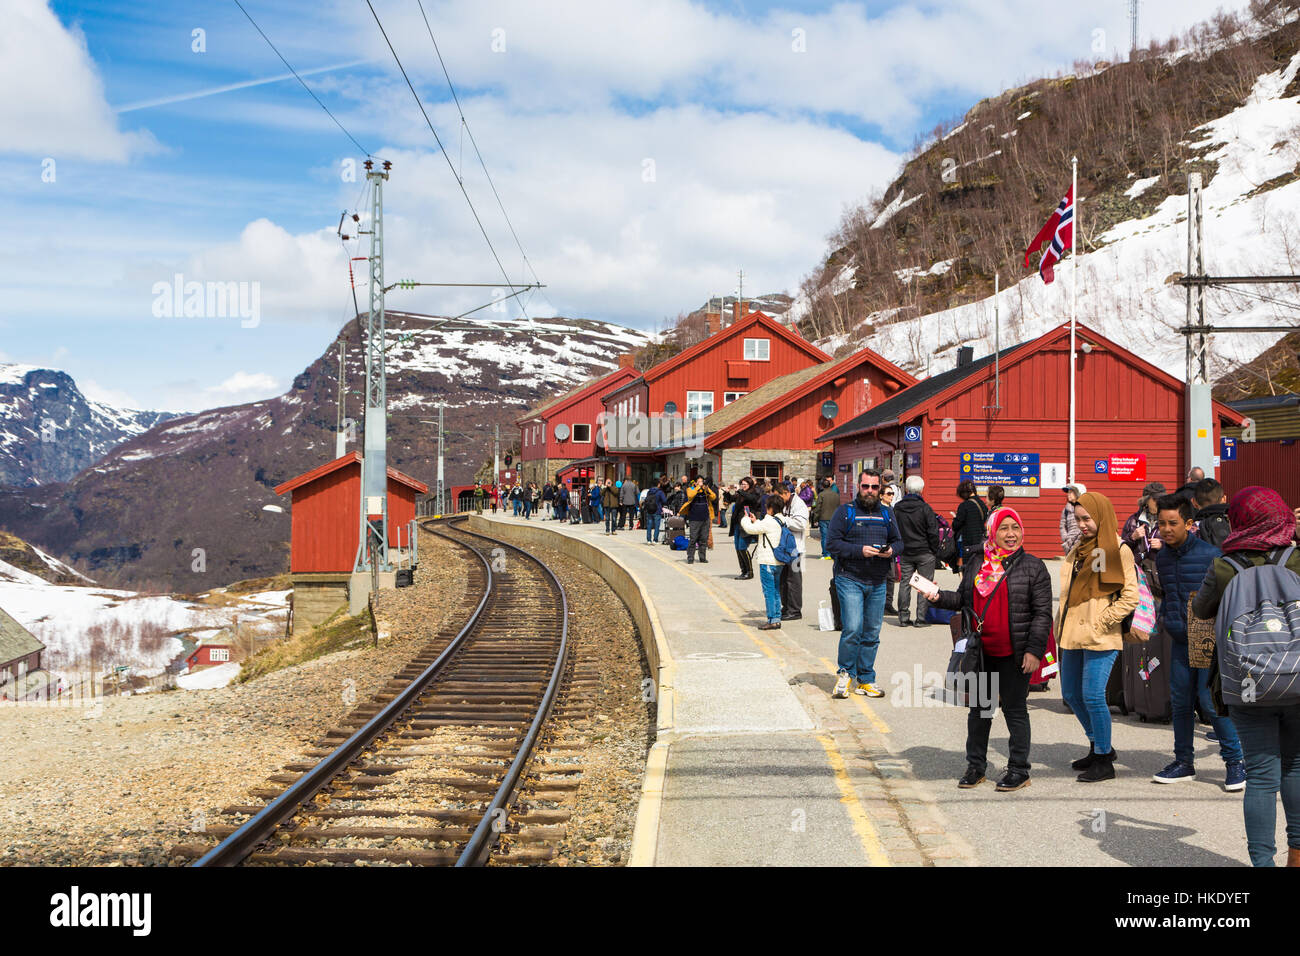 MYRDAL, Norwegen - 17. Mai 2016: Touristen warten am Bahnhof Myrdal für den Zug, der sie nach Flåm, einem Dorf entlang der Fjorde in Norwegen bringen wird. Stockfoto